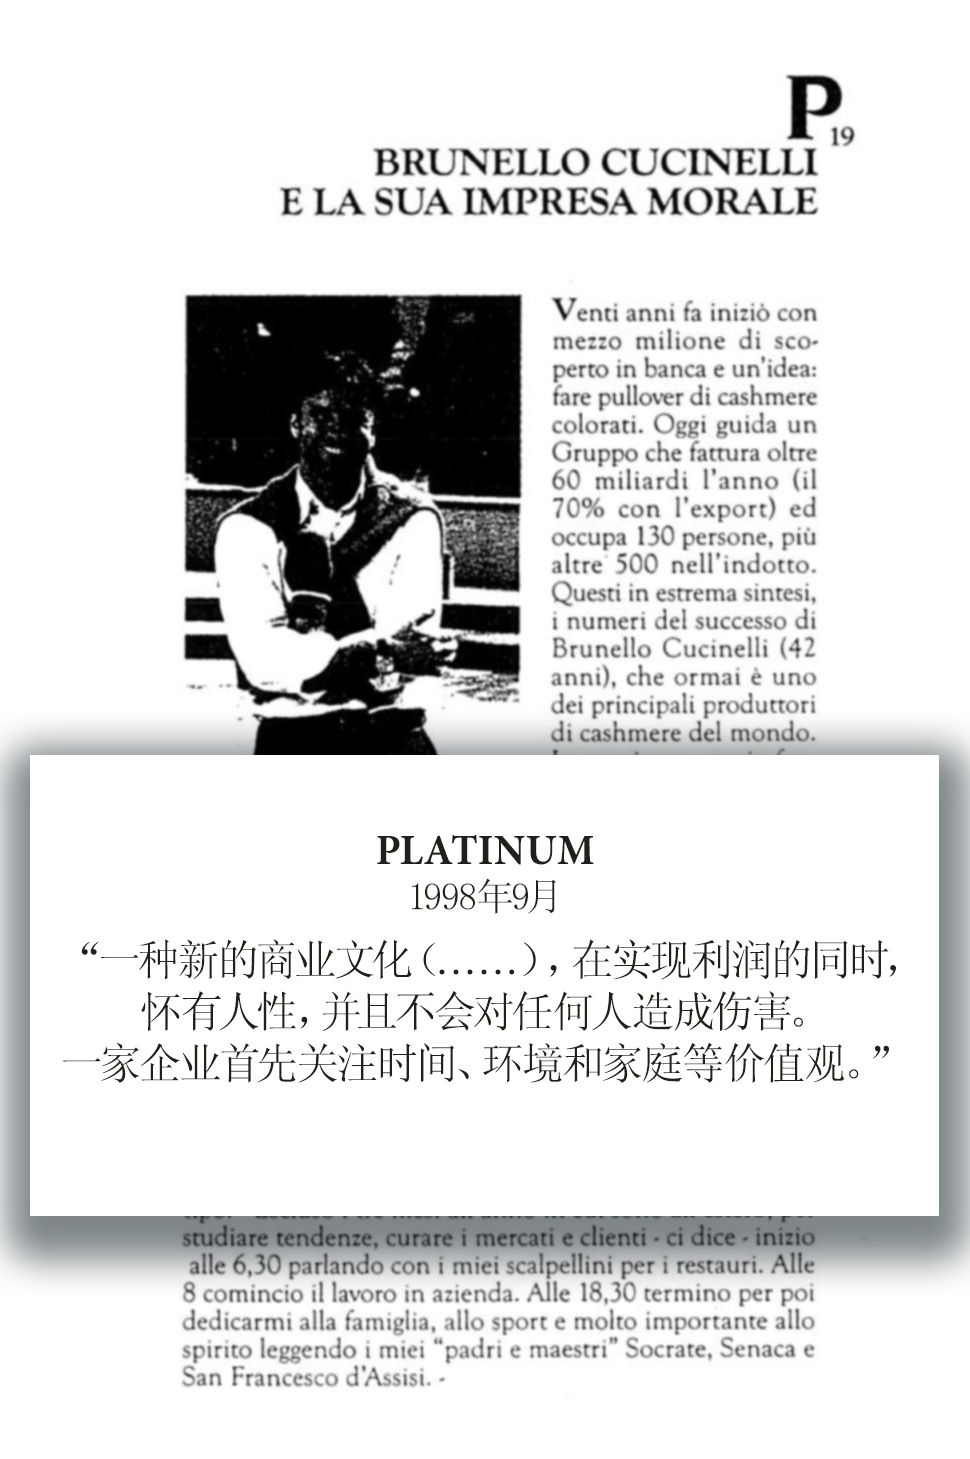 1998 Platinum